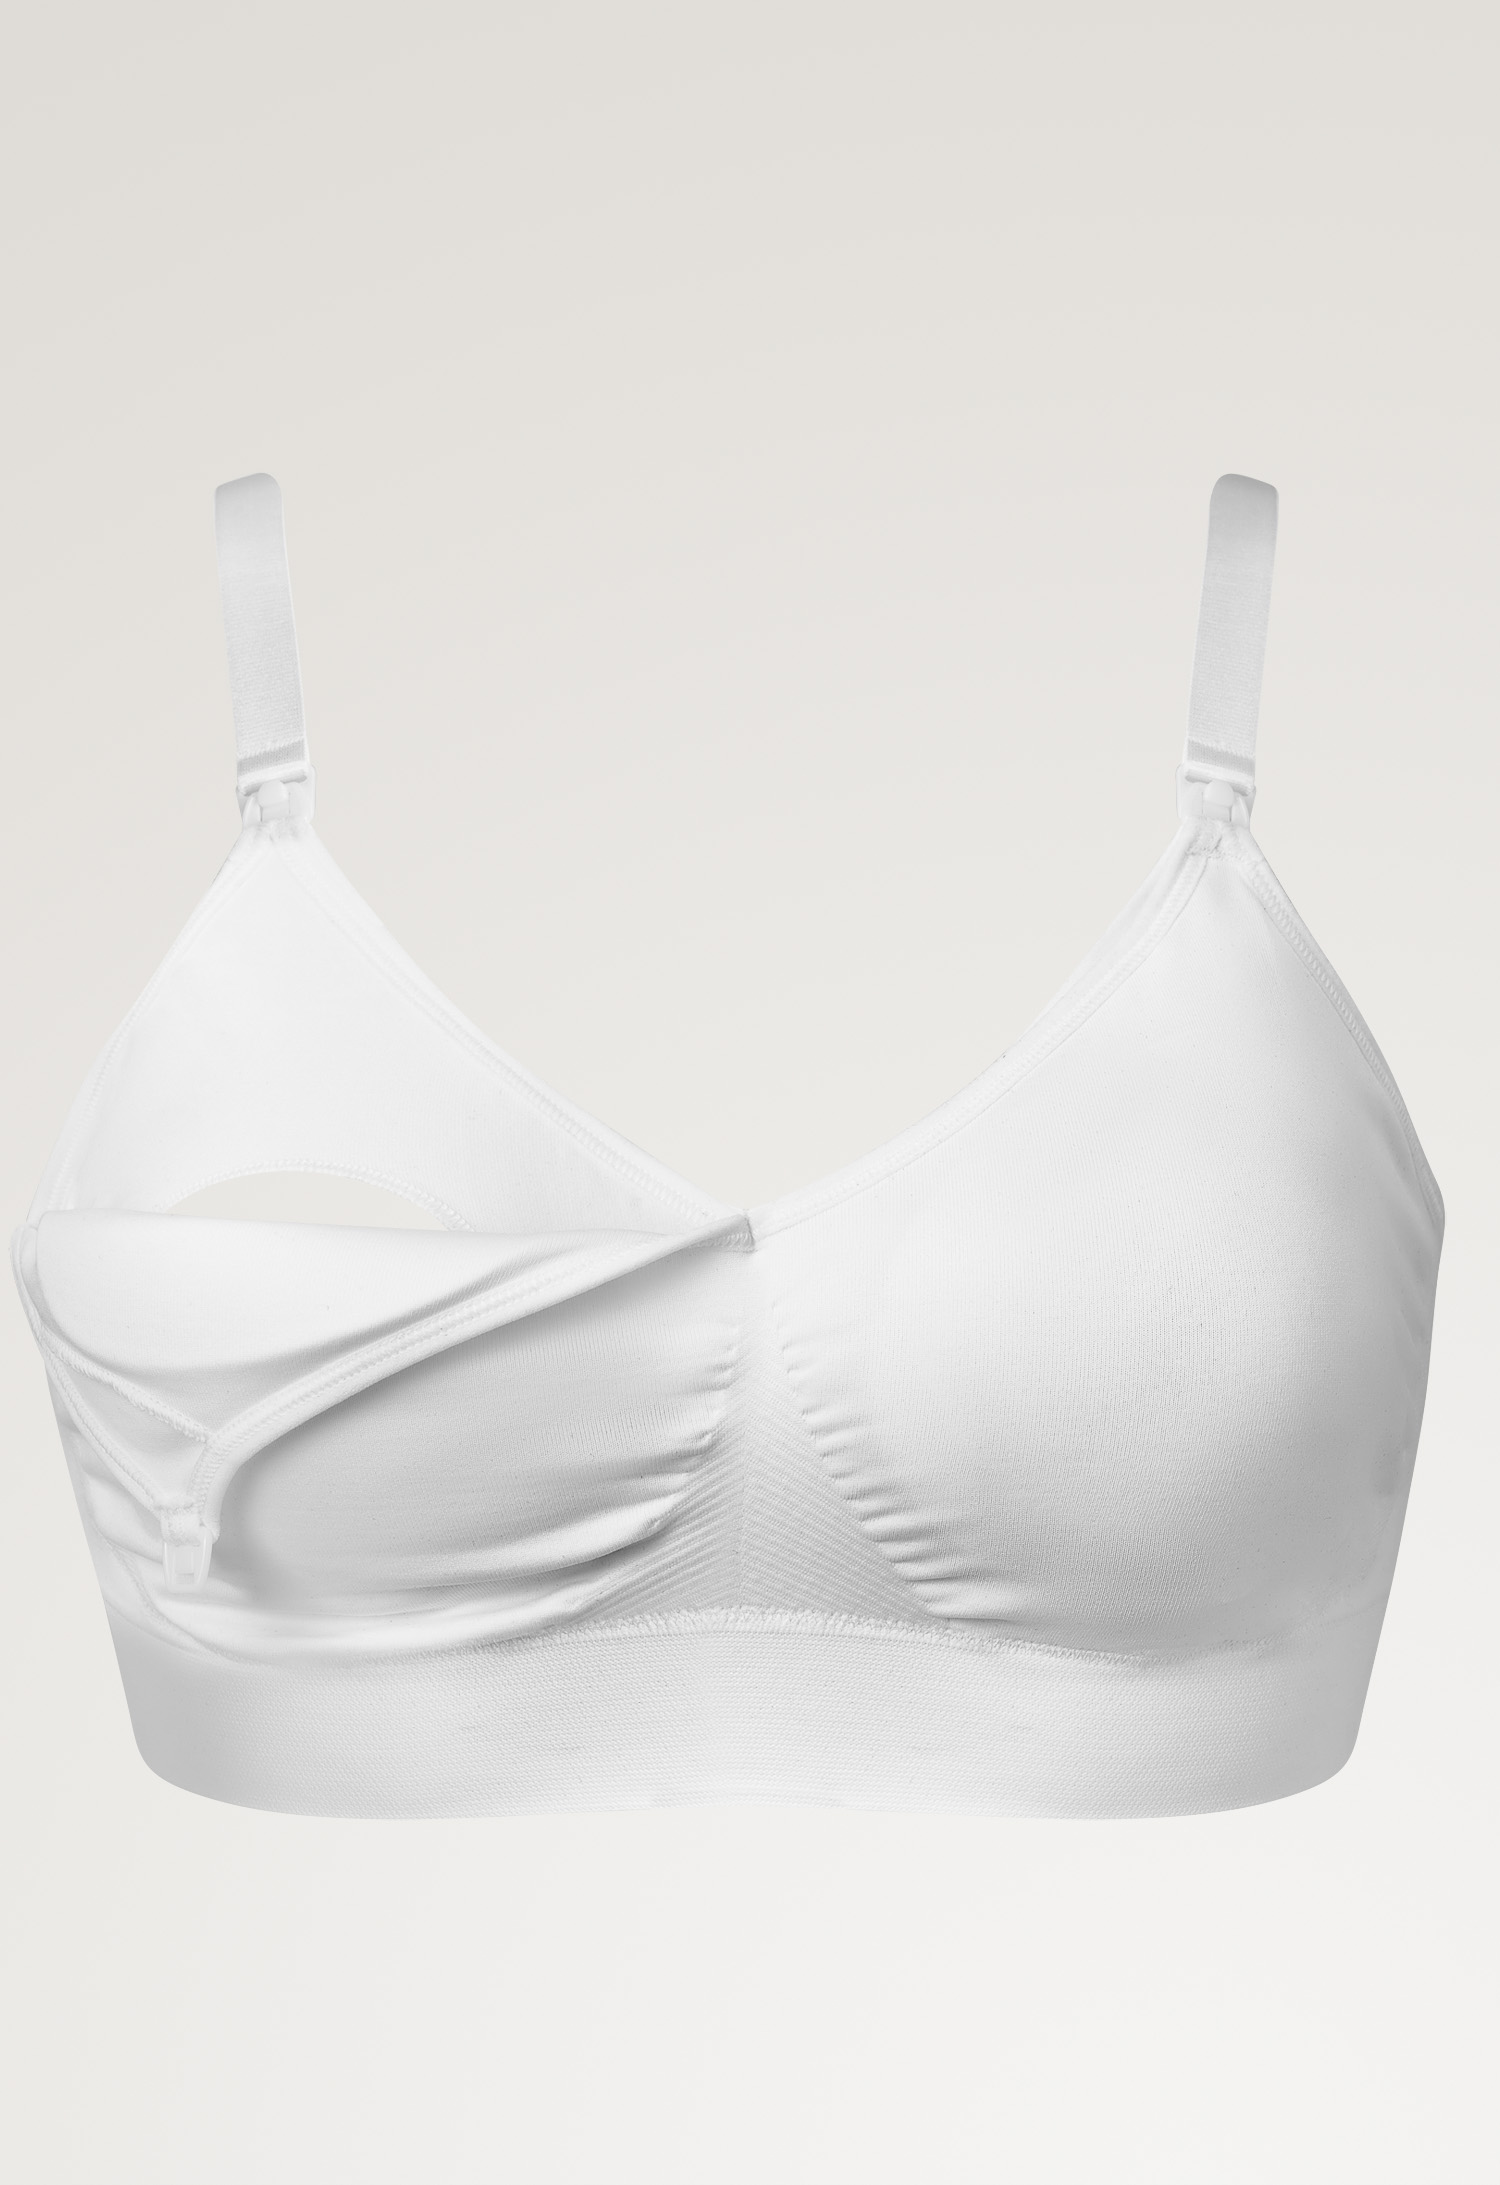 Fast Food T-shirt bra , White S (5) - Maternity underwear / Nursing underwear